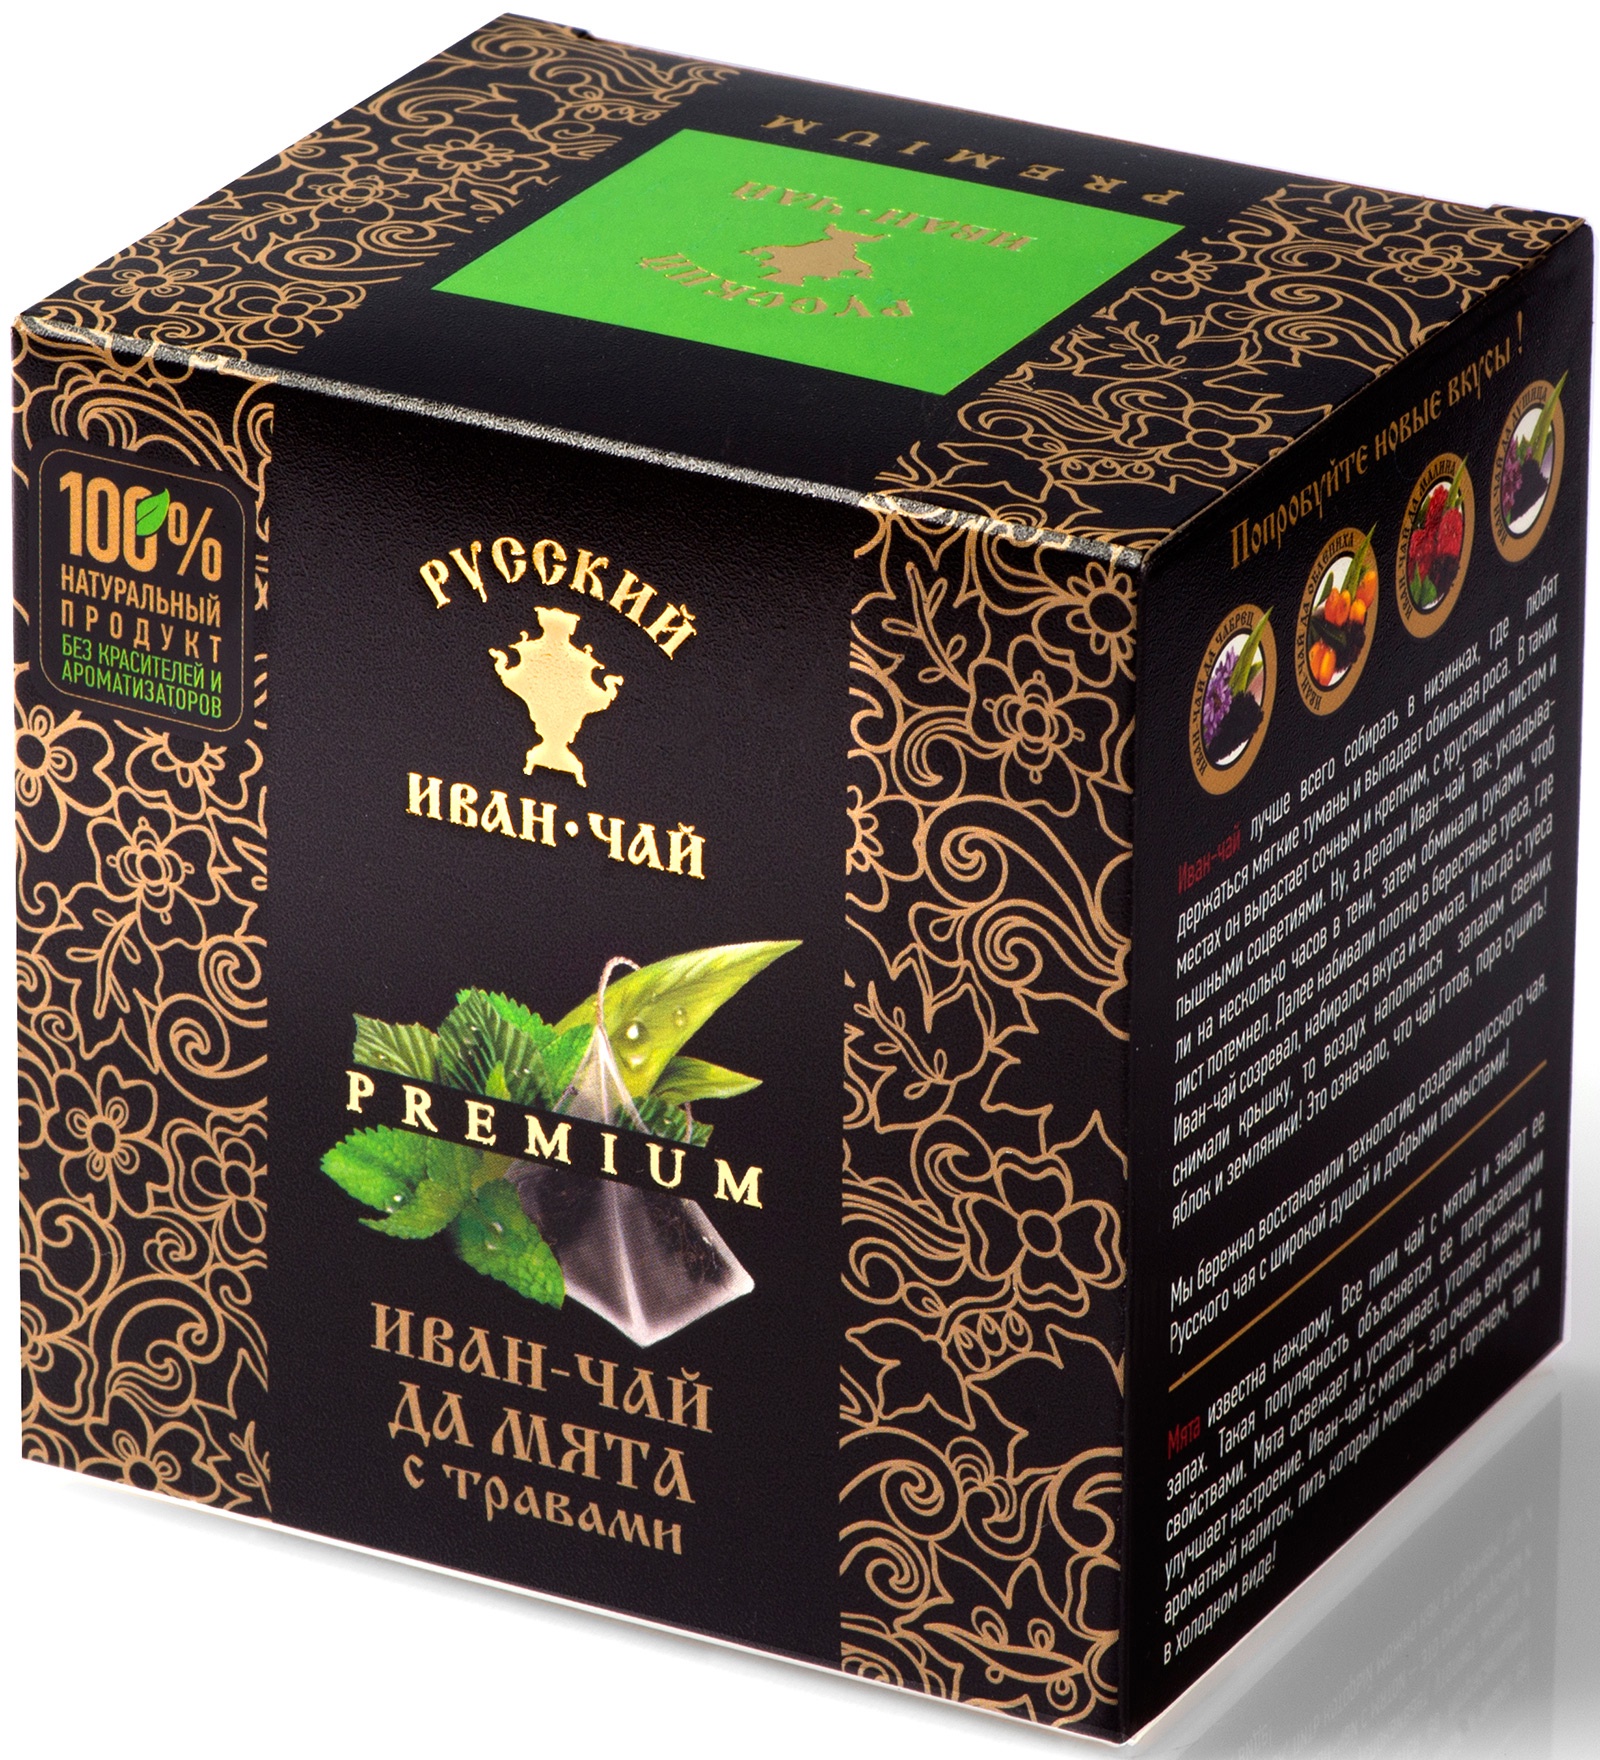 Купить чай в калининграде. Упаковка чая. Чай в пирамидках. Коробка для чая. Вкусный чай.